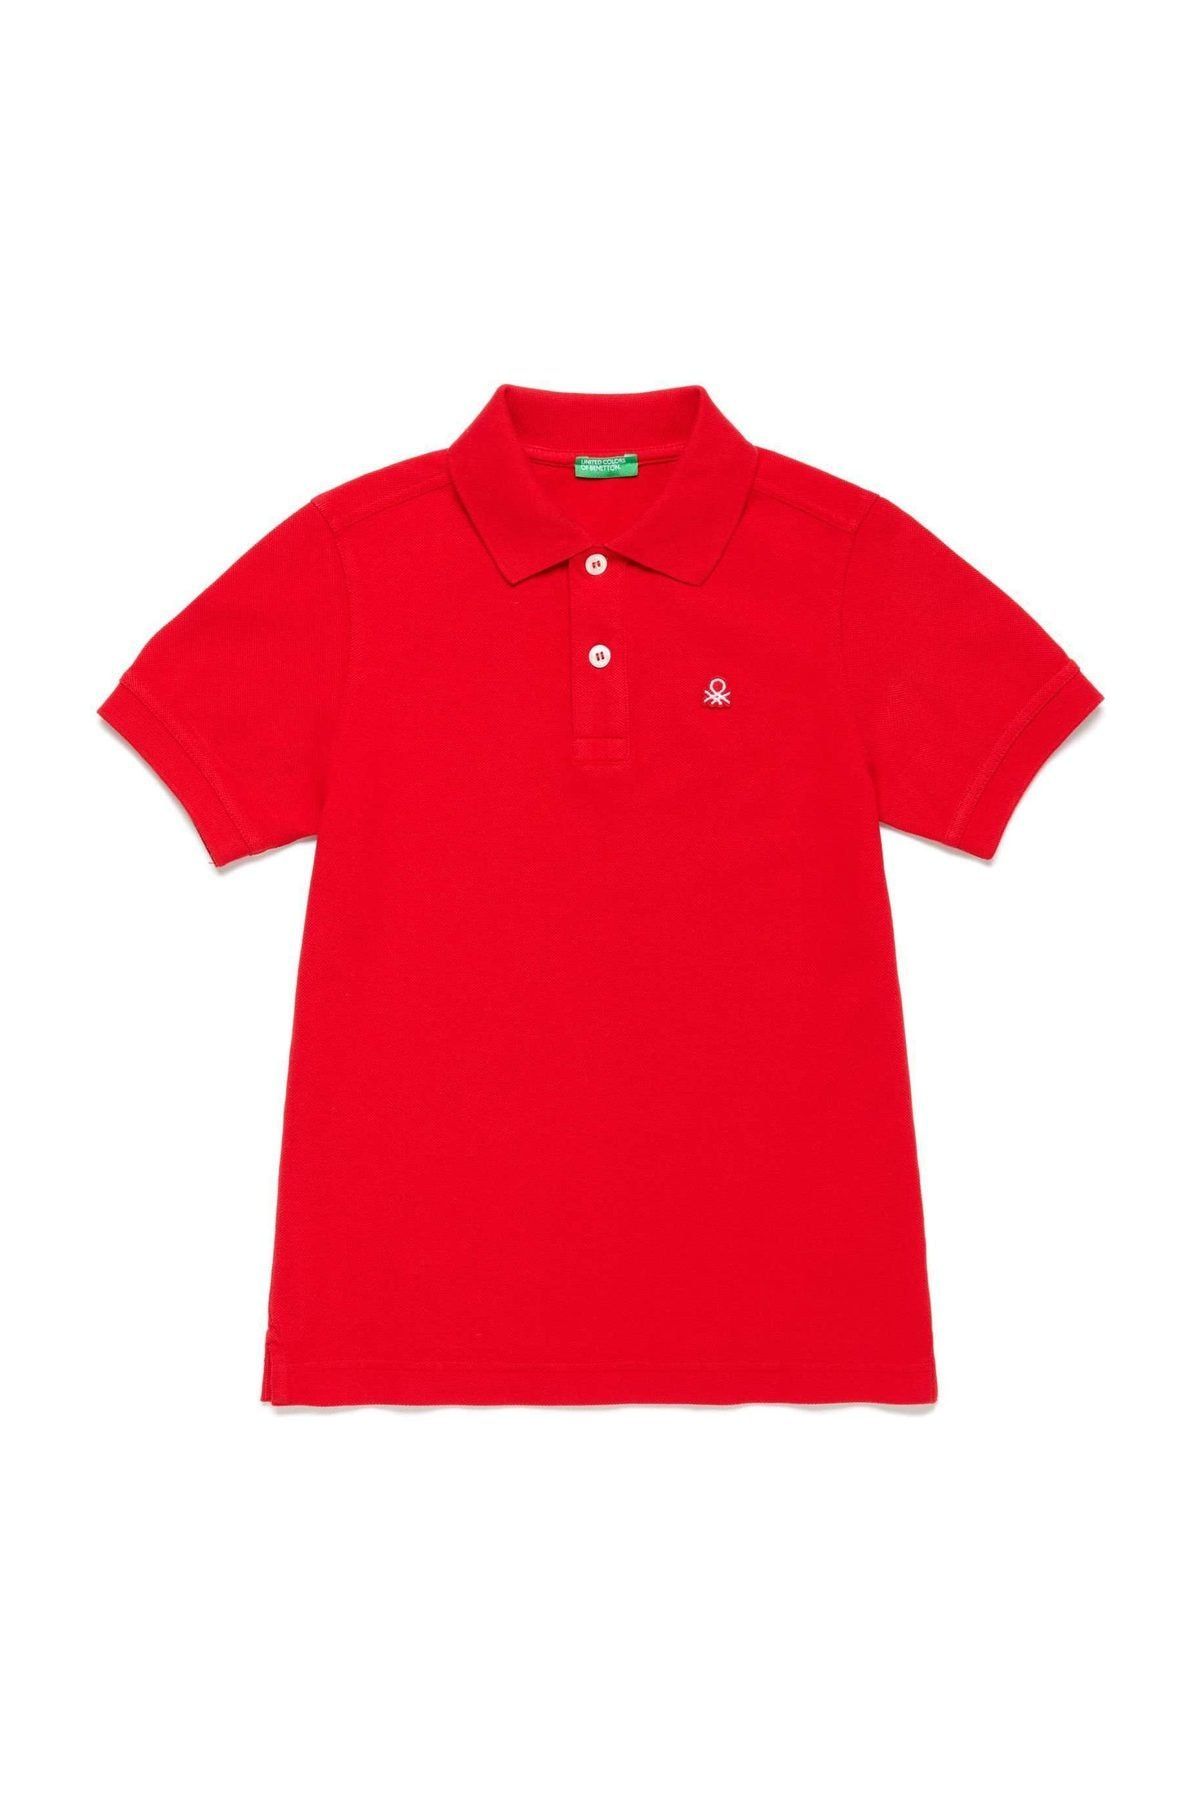 United Colors of Benetton Kırmızı Erkek Çocuk Benetton Logo Pike Polo Tshirt